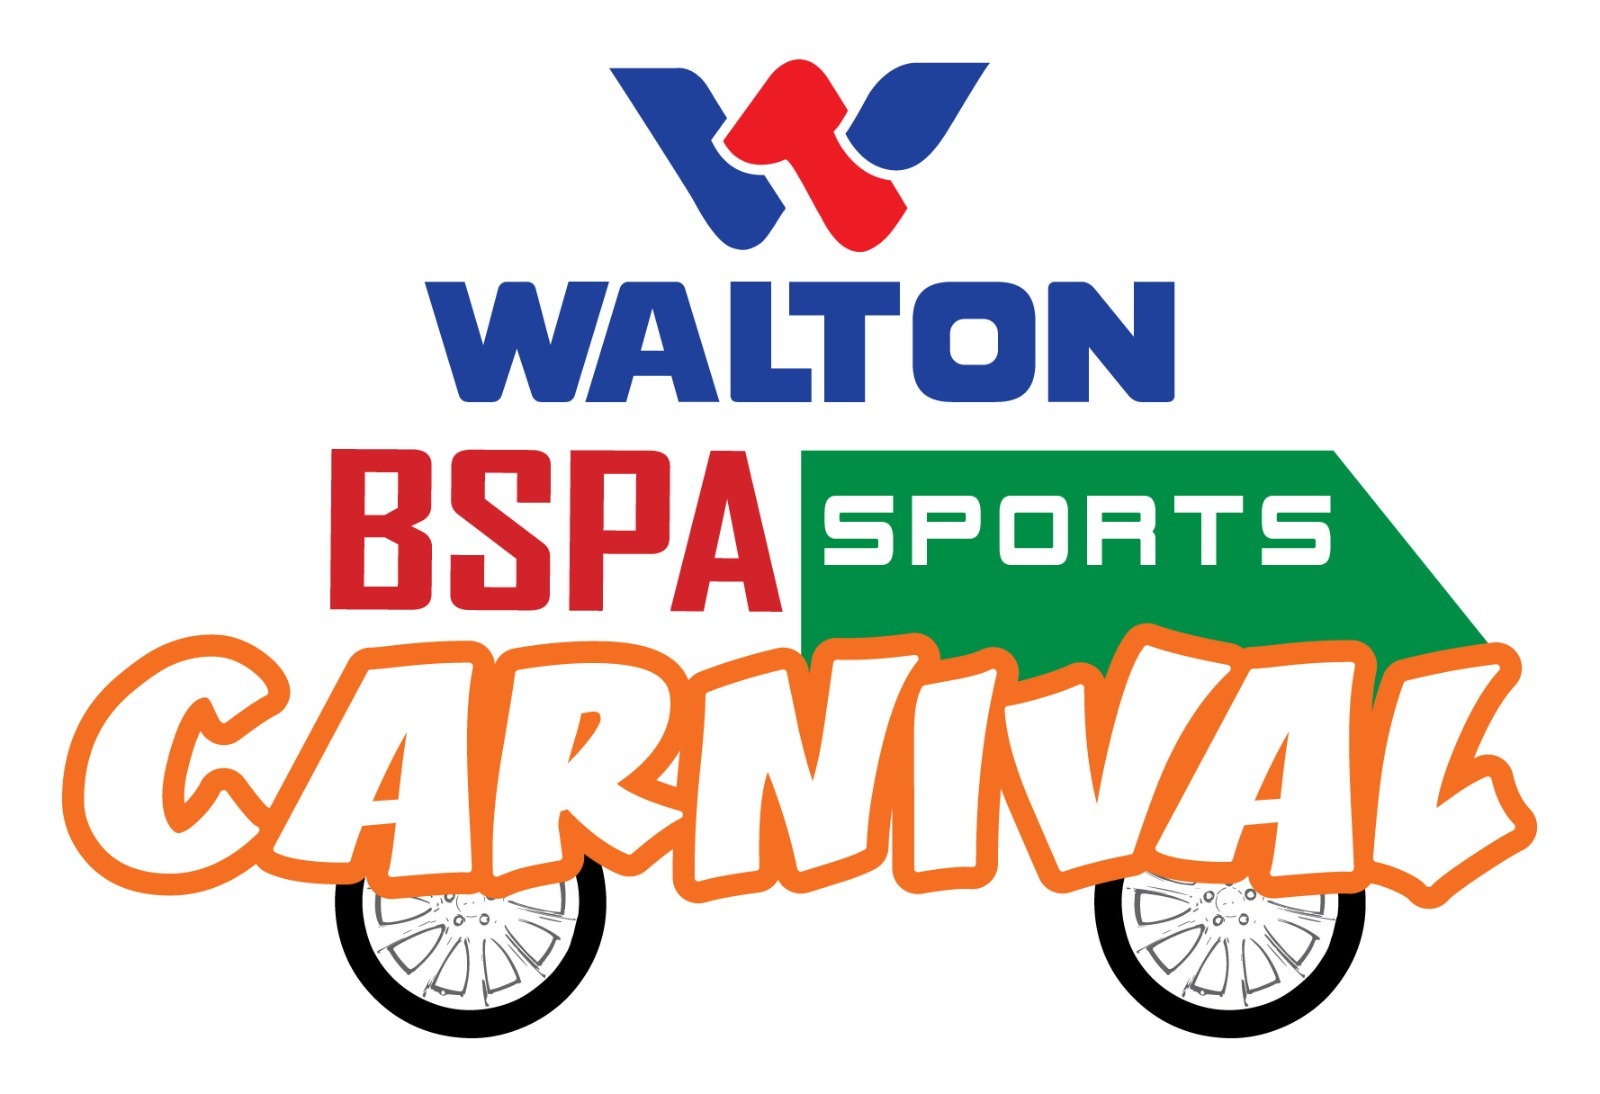 WALTON BSPA Sports Carnival